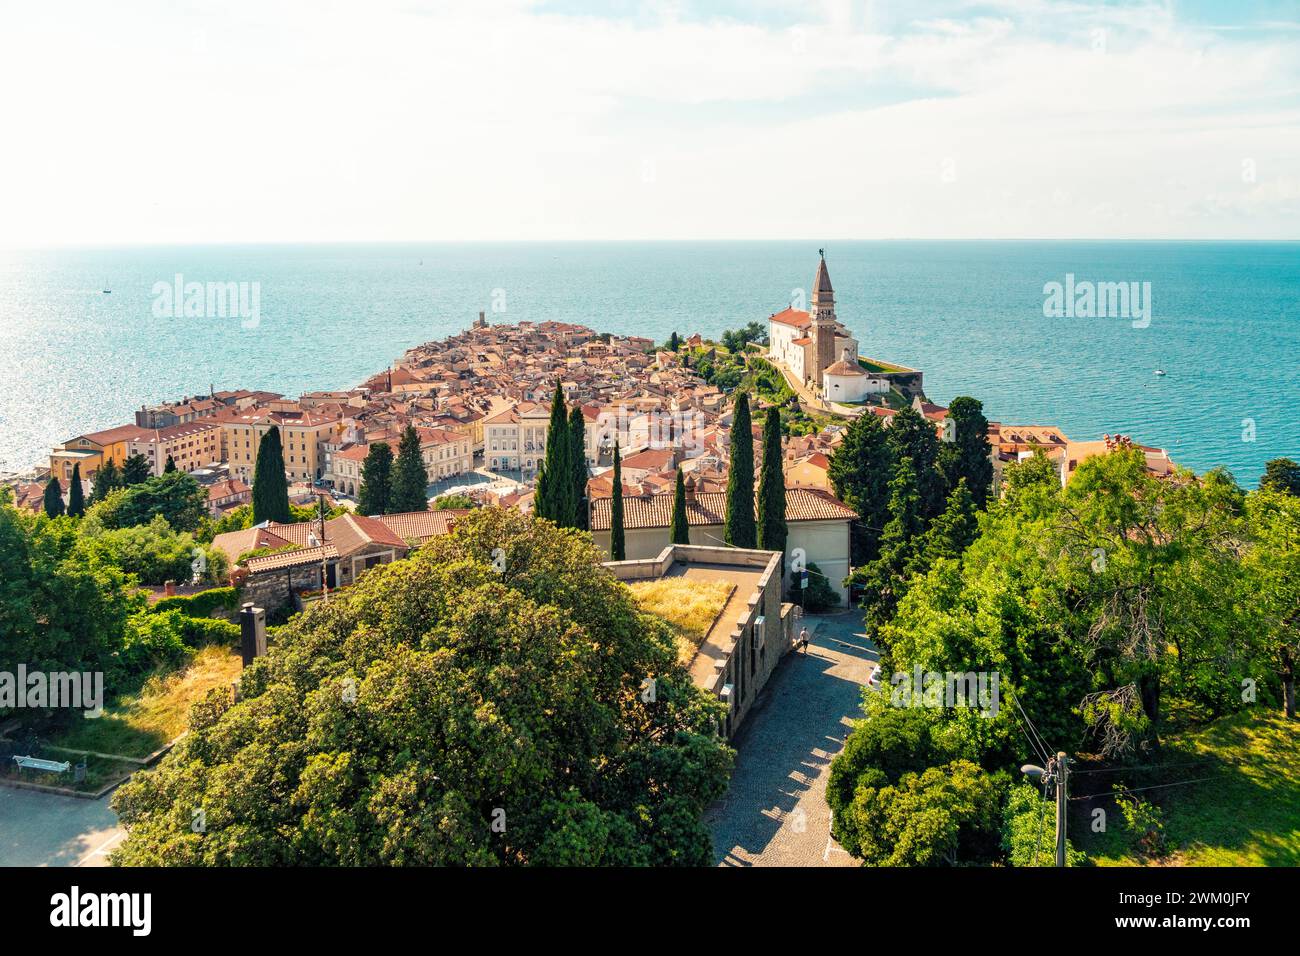 Slovénie, littoral-Karst, Piran, vue de la ville côtière en été avec une ligne d'horizon dégagée sur la mer Adriatique en arrière-plan Banque D'Images